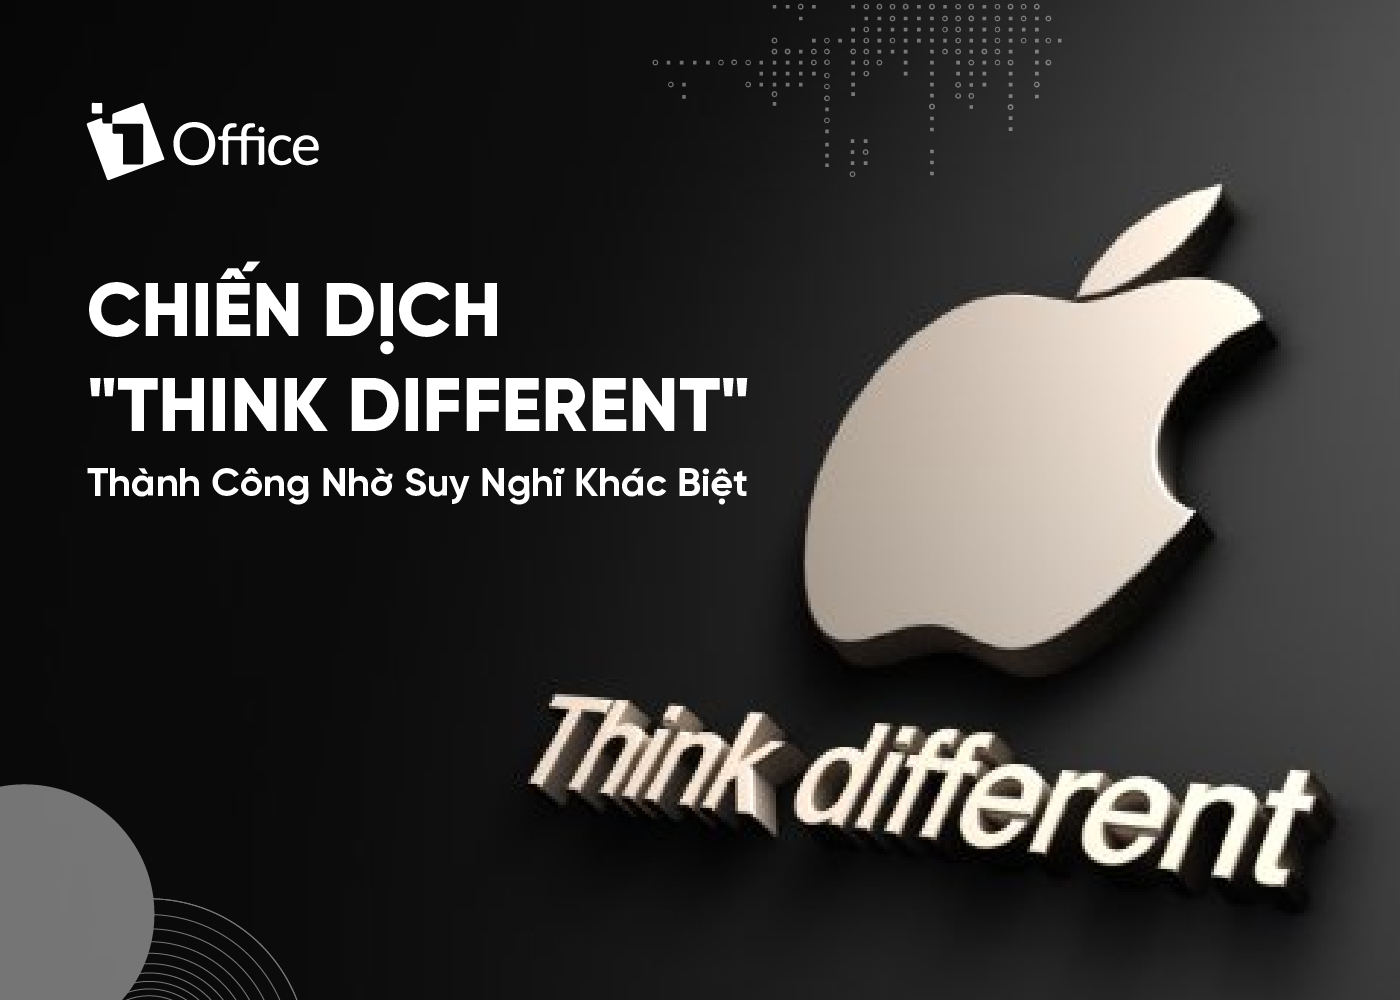 Chiến dịch “Think Different”: Thành công nhờ suy nghĩ khác biệt